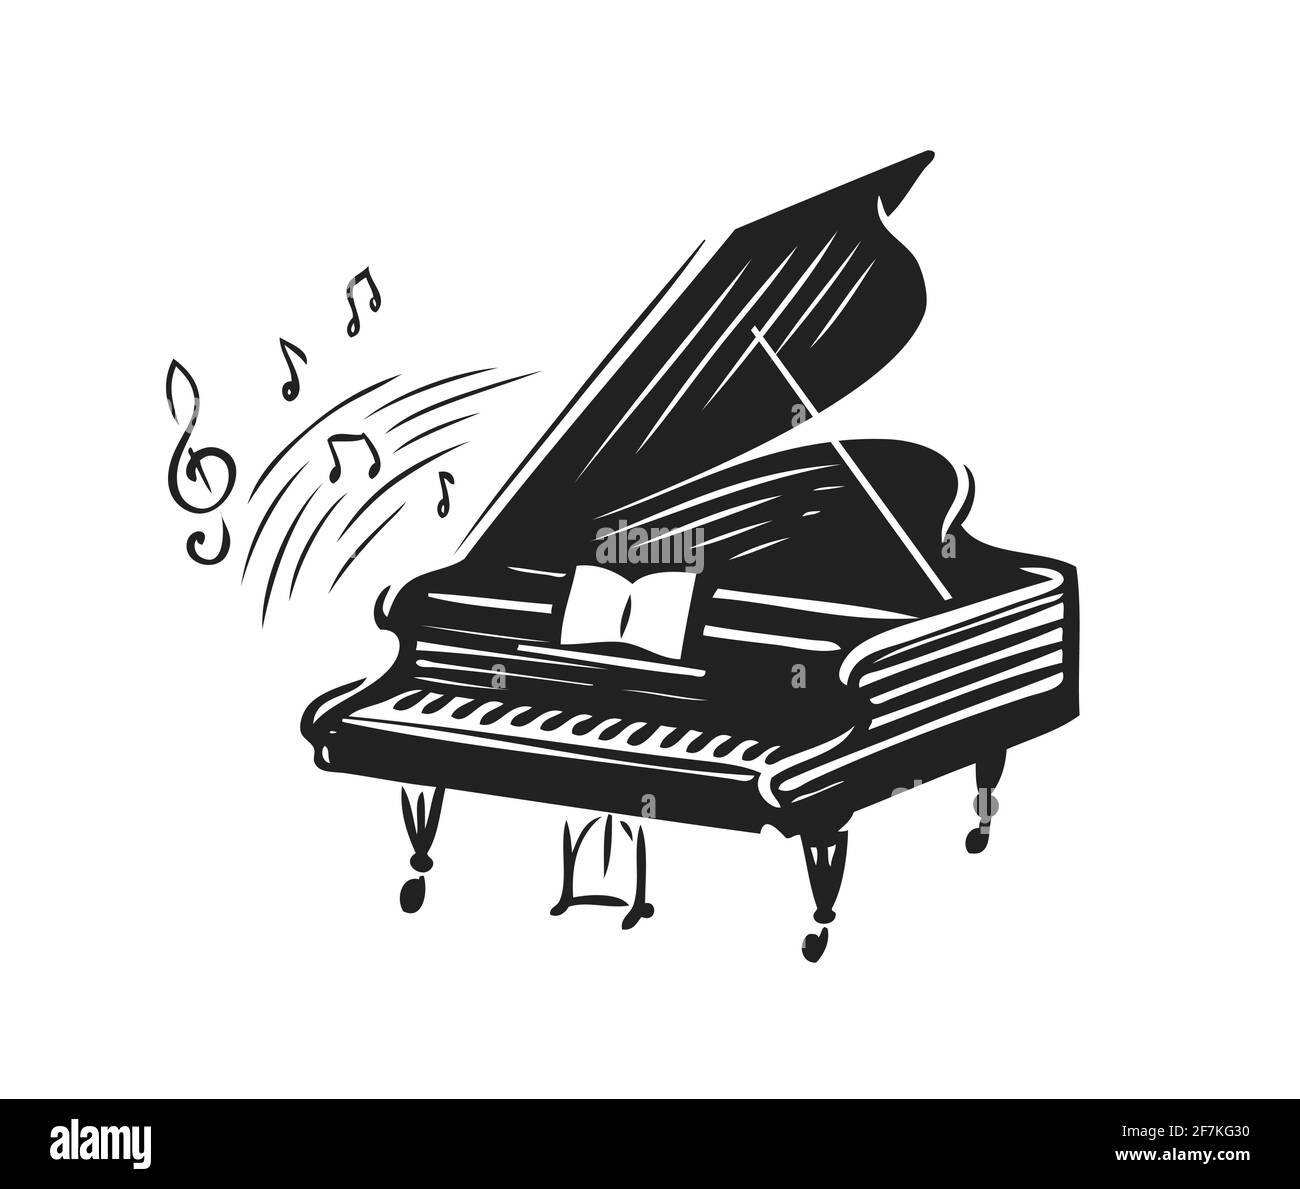 Pianoforte a coda disegnato a mano in stile schizzo. Illustrazione vettoriale dei simboli musicali Illustrazione Vettoriale